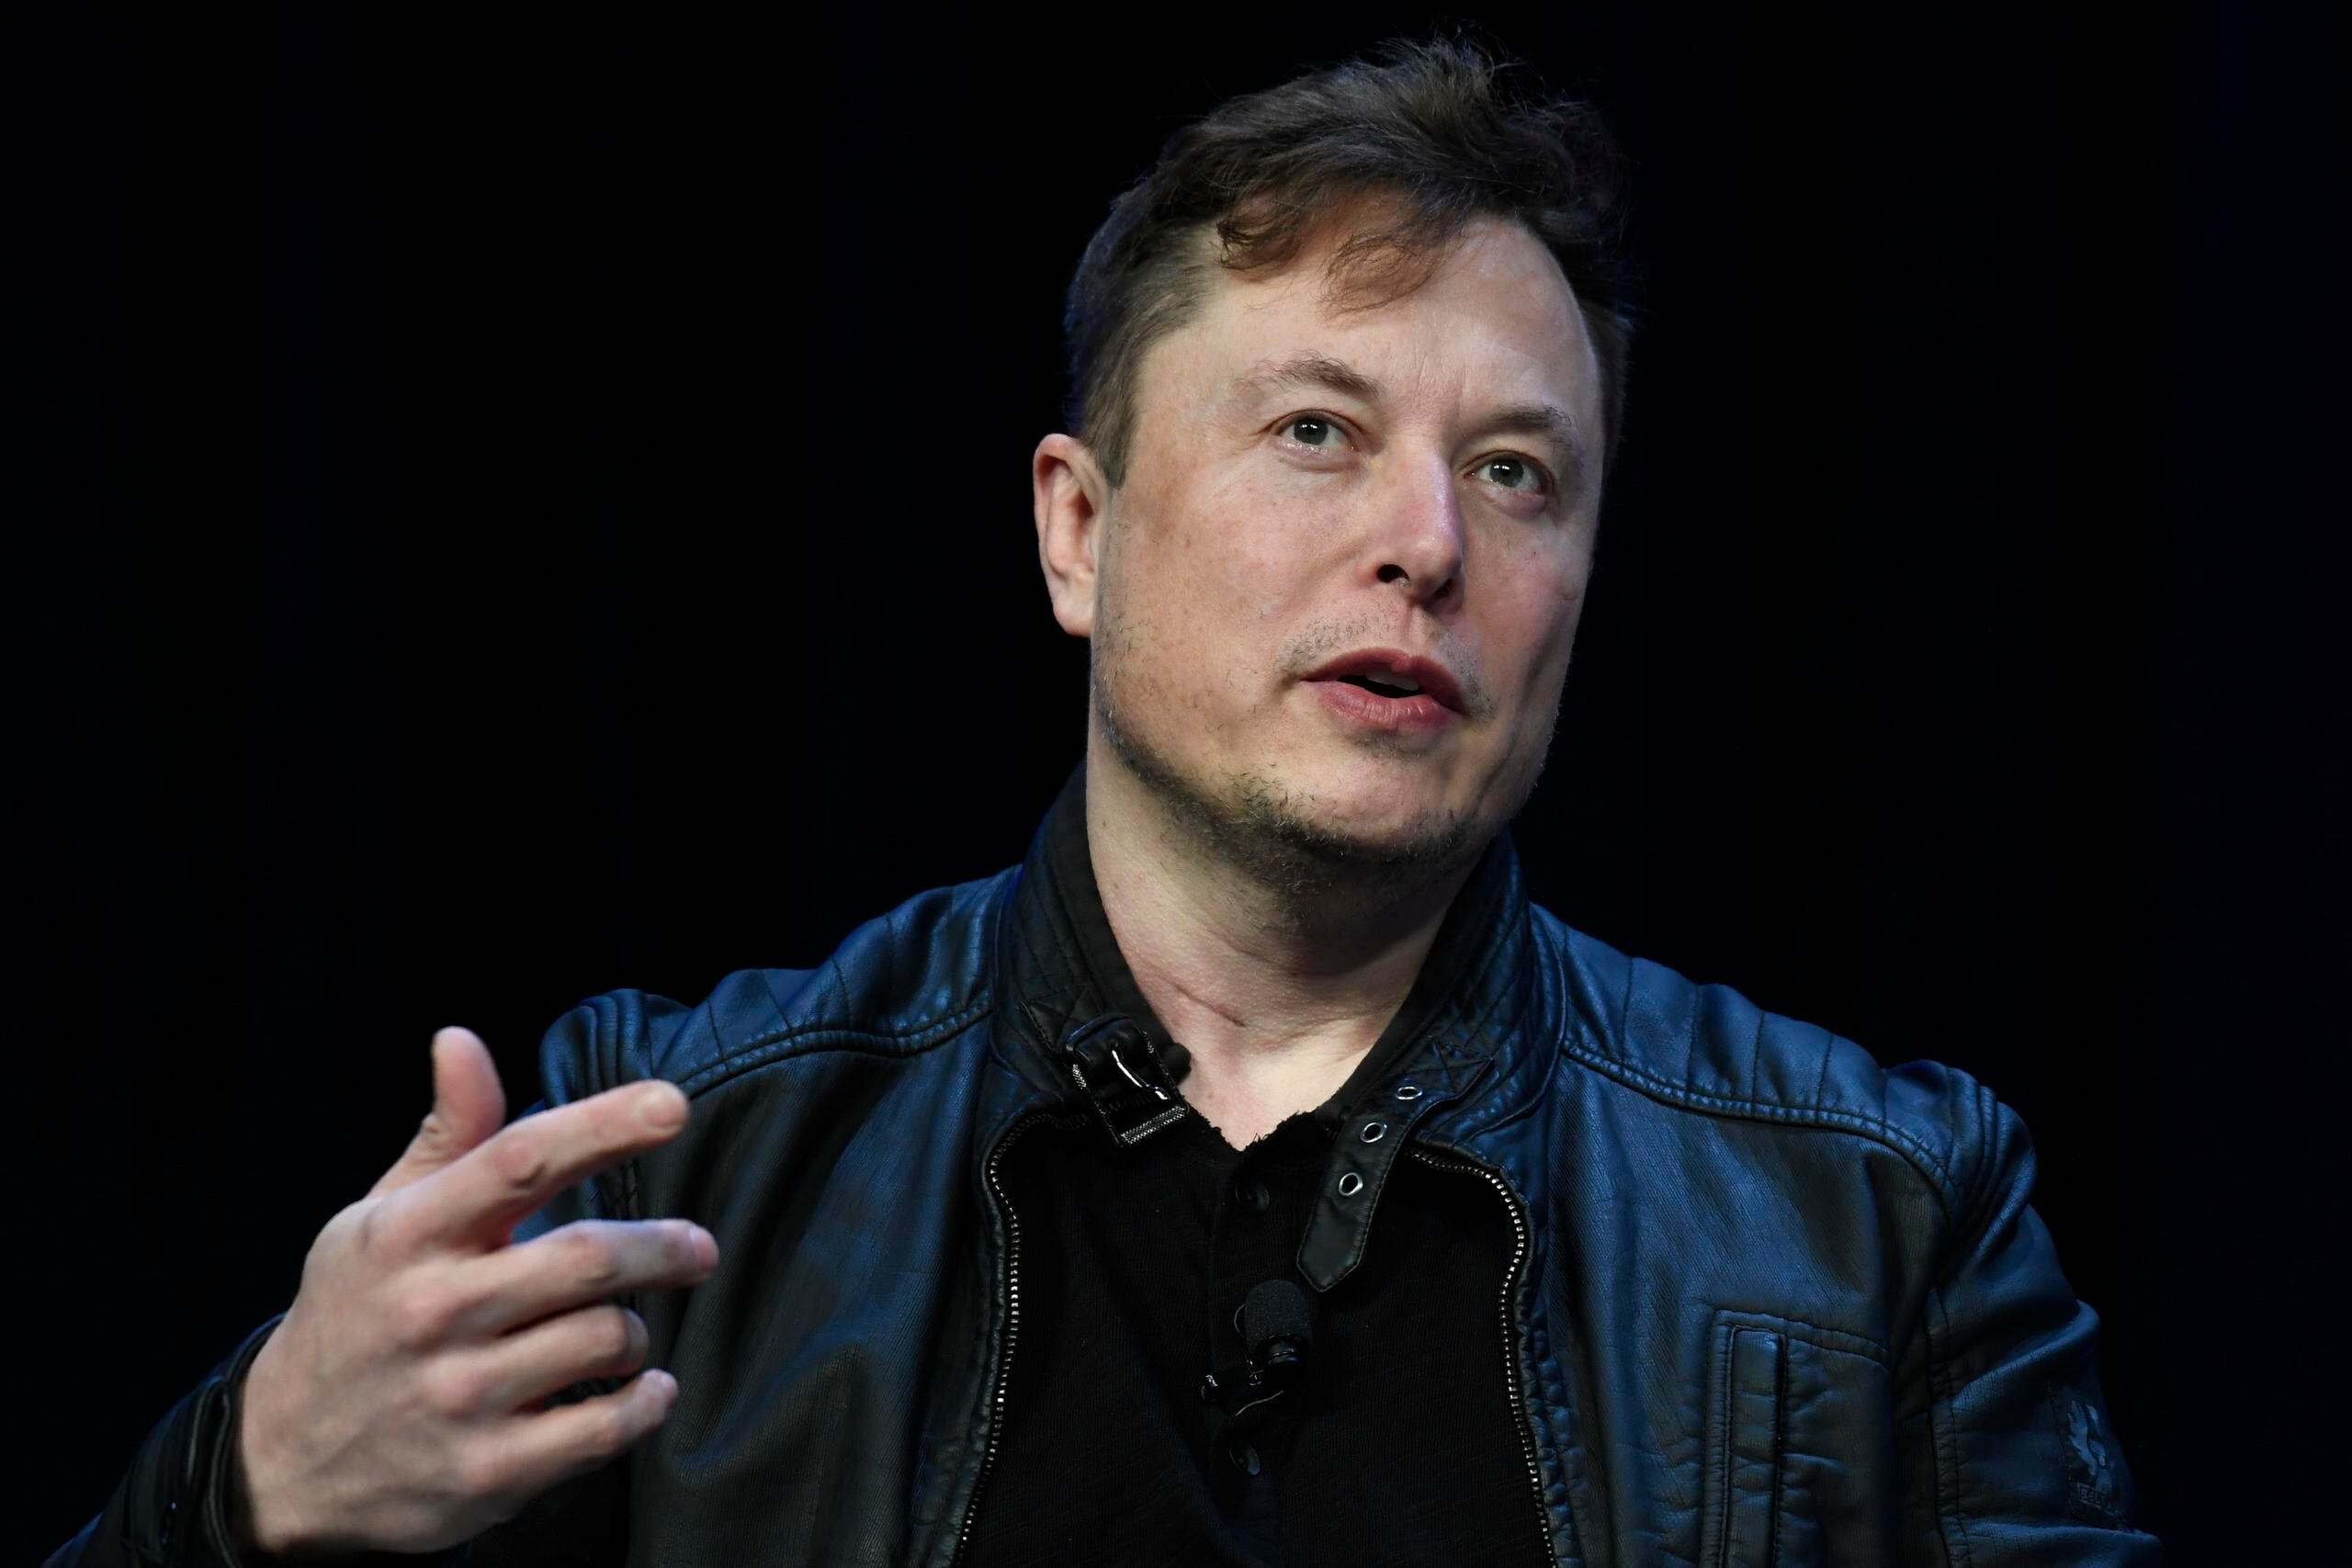 ARCHIVO - El director general de Tesla y SpaceX, Elon Musk, habla durante un evento en Washington, el 9 de marzo de 2020. (AP Foto/Susan Walsh, Archivo)